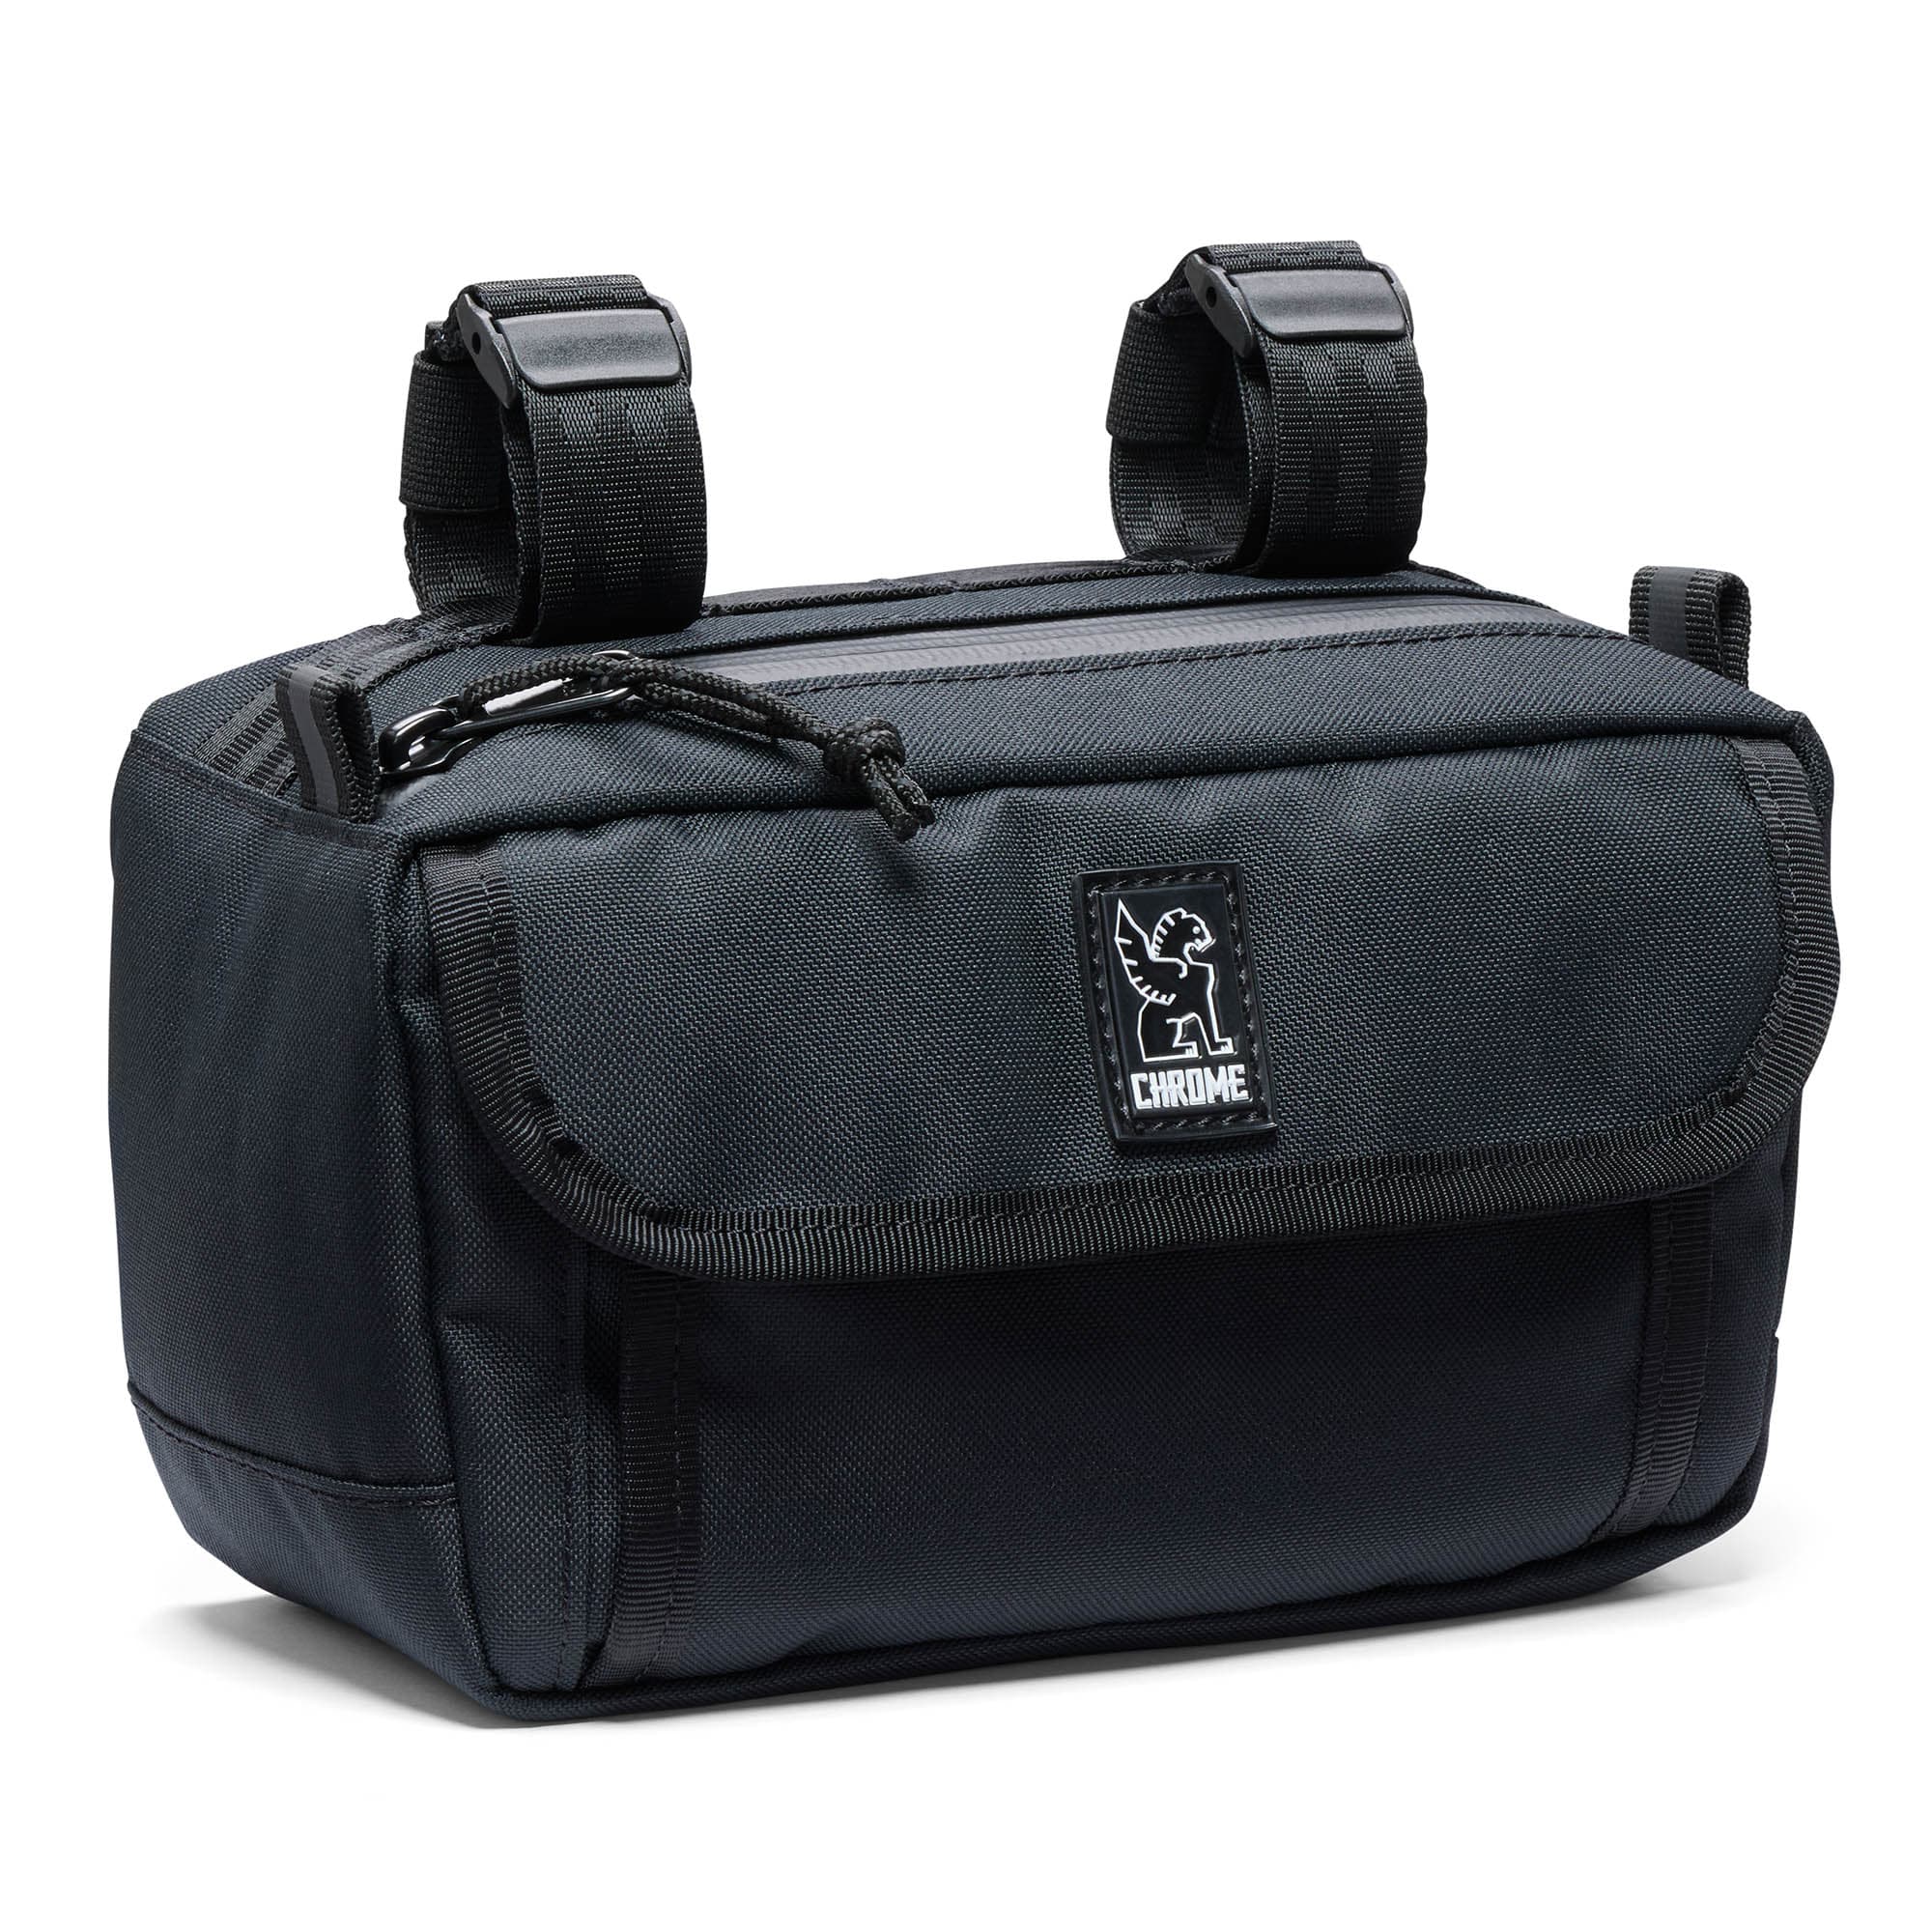 Holman Handlebar Bag in black #color_black